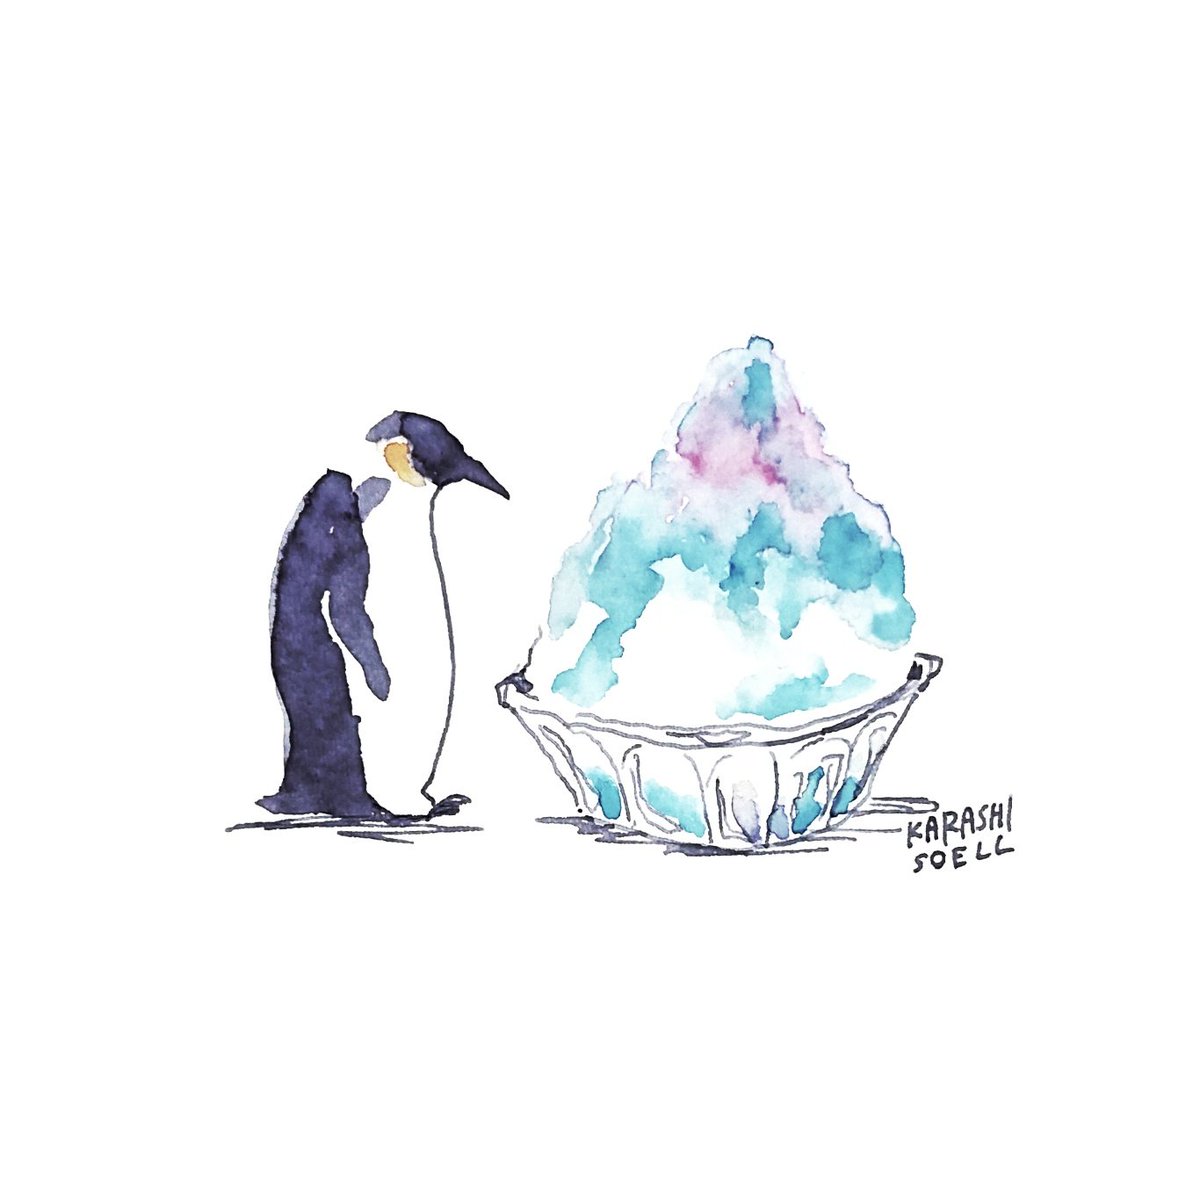 Twitter 上的 カラシソエル イラストレーター 今日のイラスト ペンギン かき氷と出会う 今日のカラシイラスト T Co Jzb2lyrt5t Twitter